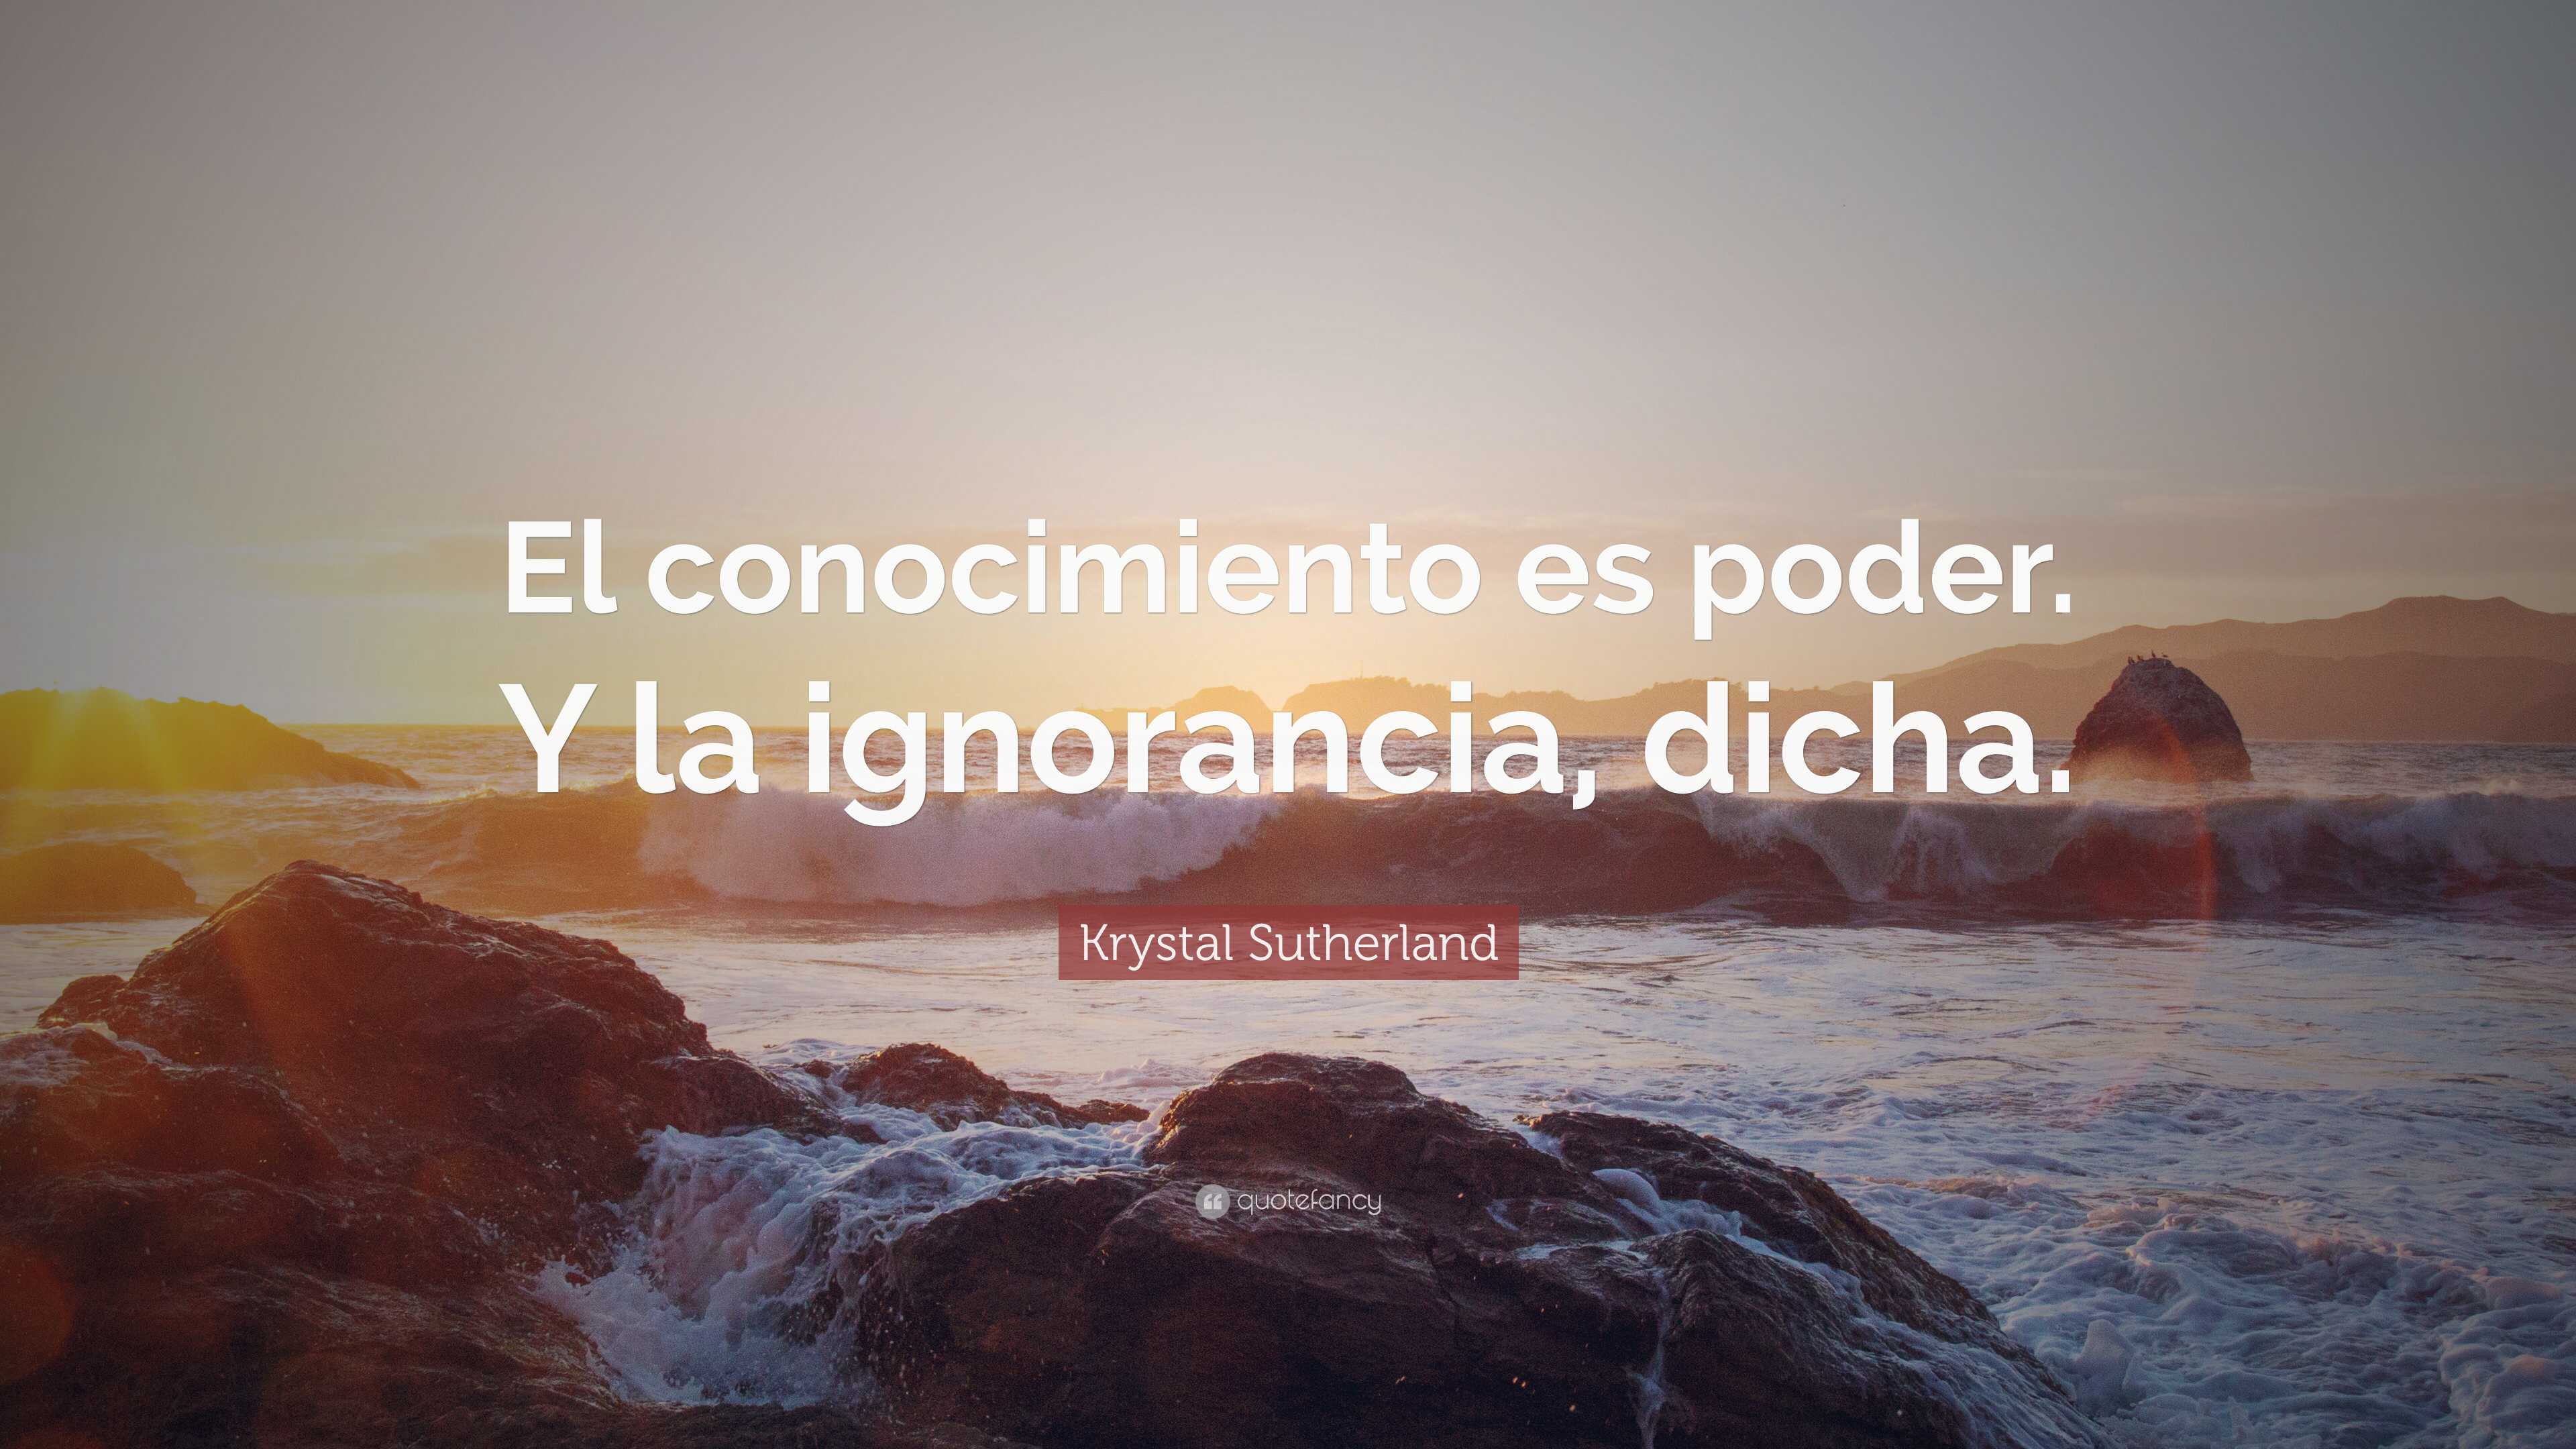 Krystal Sutherland Quote: “El conocimiento es poder. Y la ignorancia ...